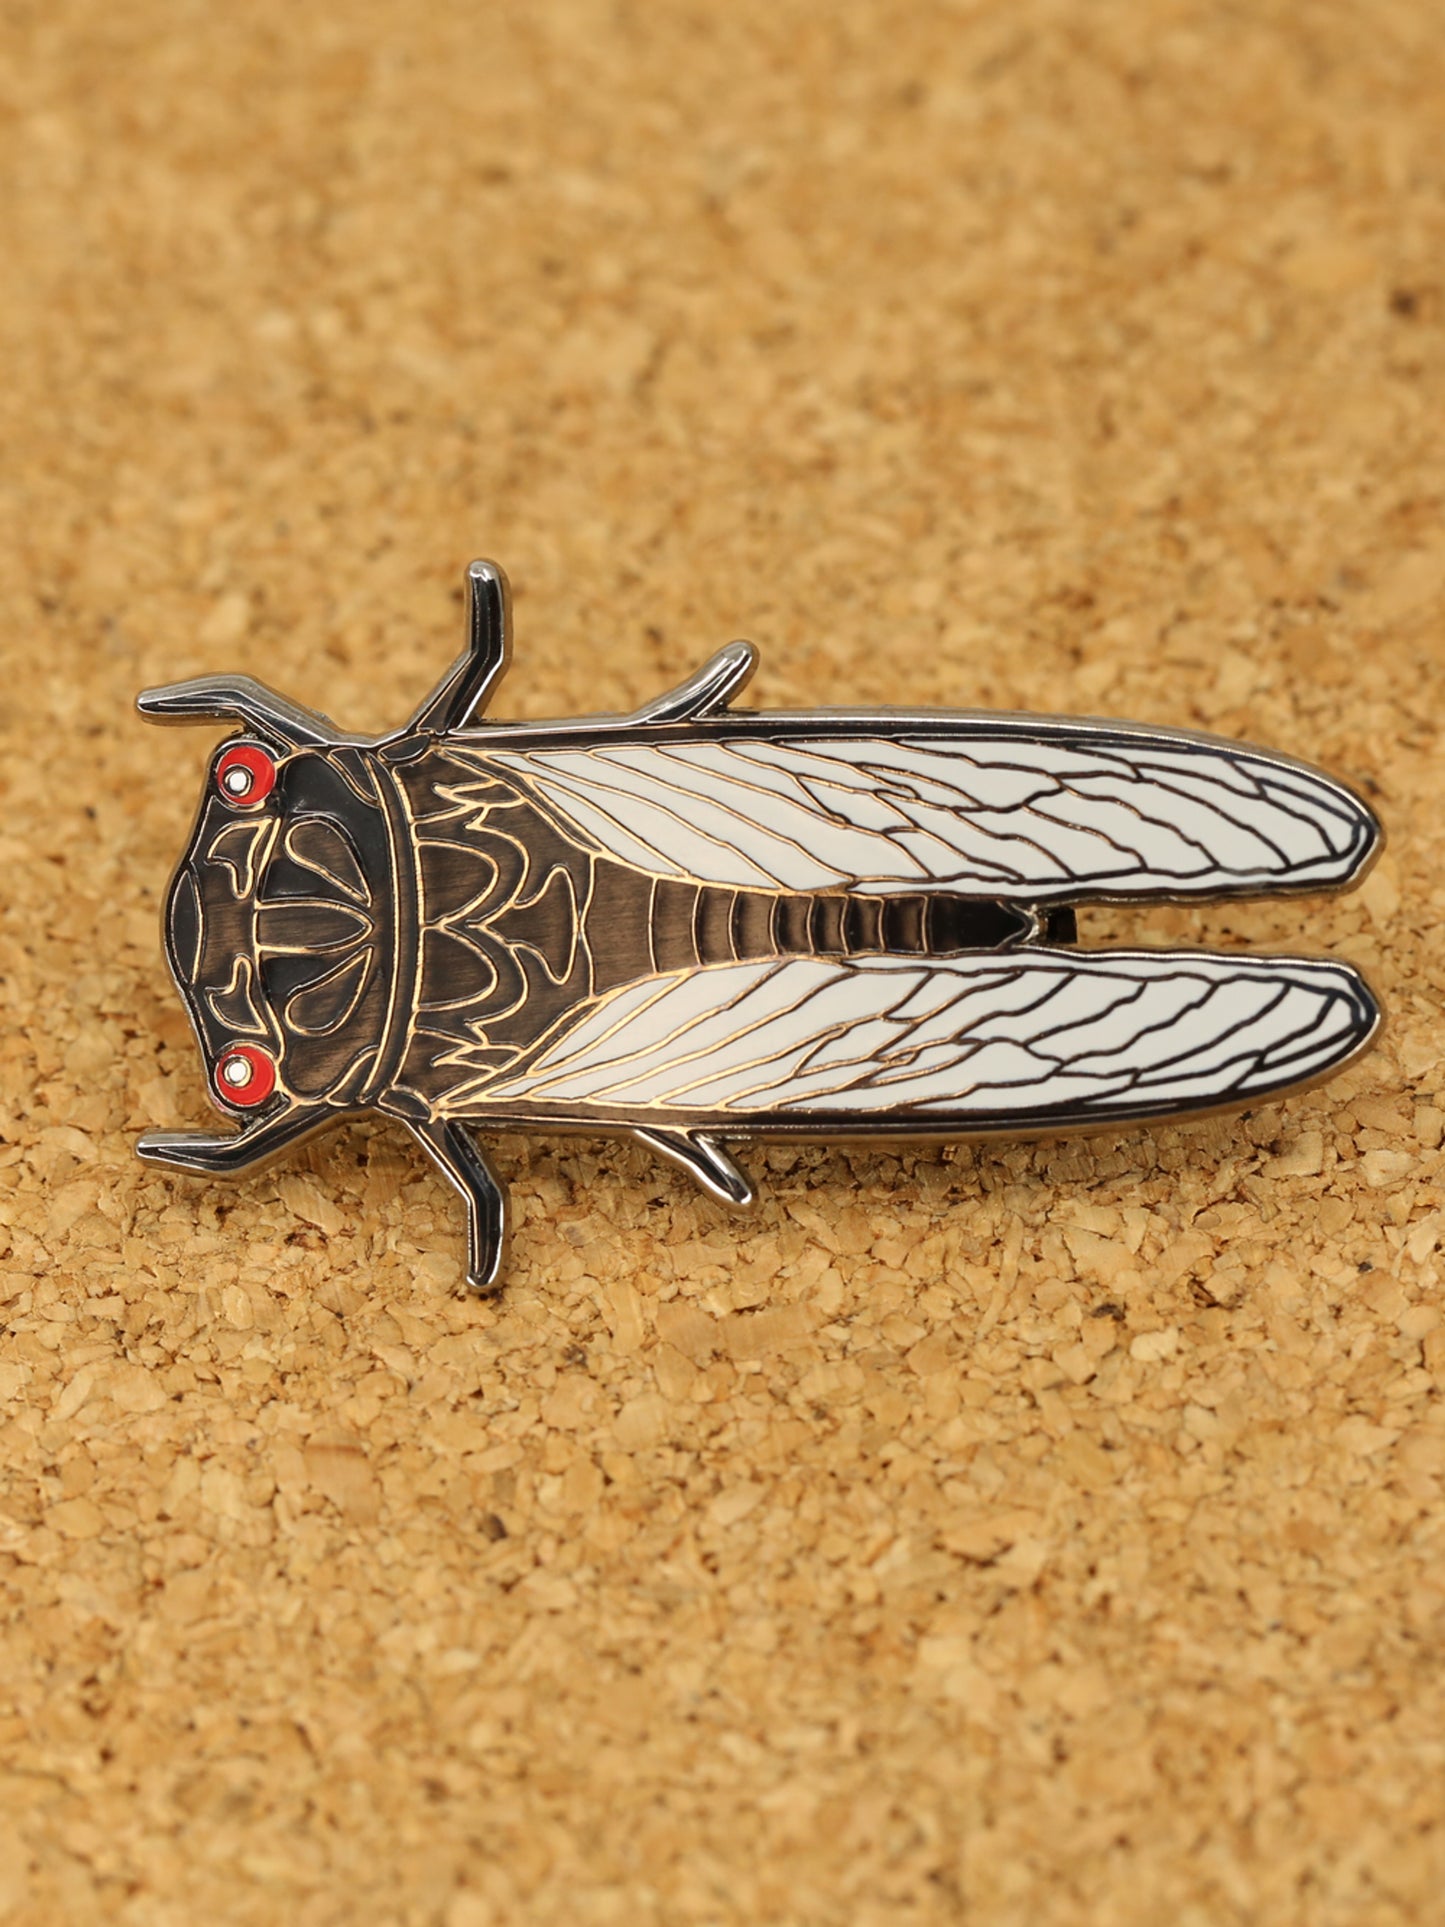 Red eye cicada